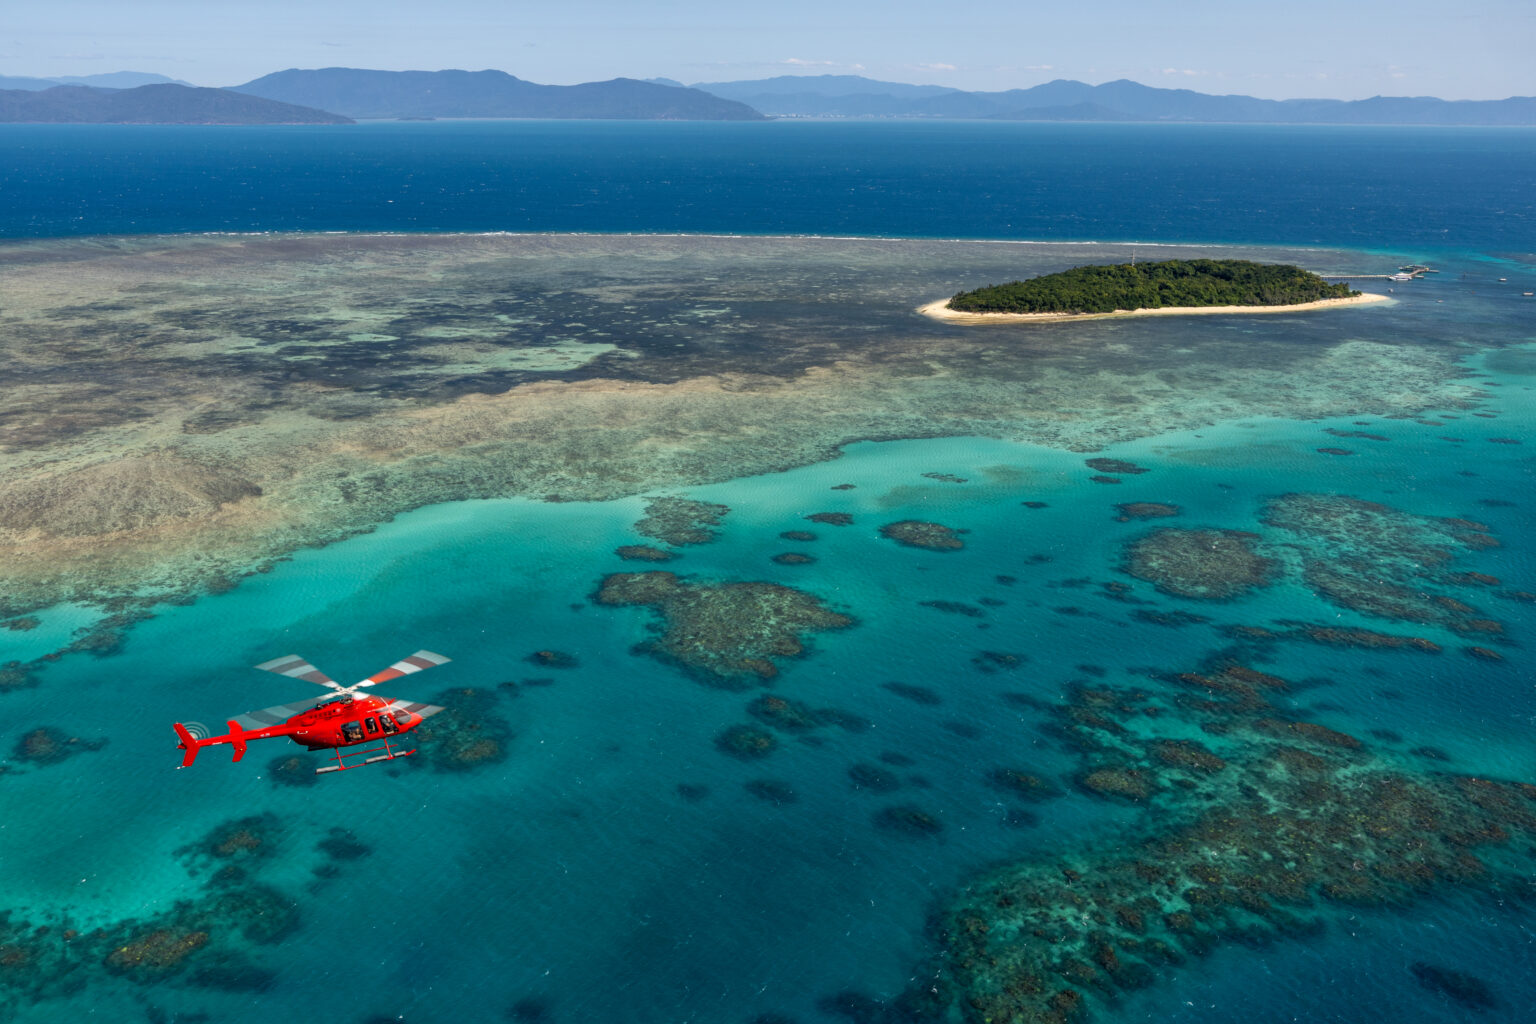 从凯恩斯出发乘坐游艇45分钟或乘坐观光直升机20分钟，可以到达岛屿的天堂——绿岛。她四周环绕着丰富多样海洋生物的珊瑚礁，绿岛是大堡礁唯一一个拥有自己雨林的珊瑚岛。您可以在海滩上慵懒地躺着，游泳、潜水、浮潜、乘坐玻璃底船等等——在这个全天或半天的体验中，您将有很多选择。